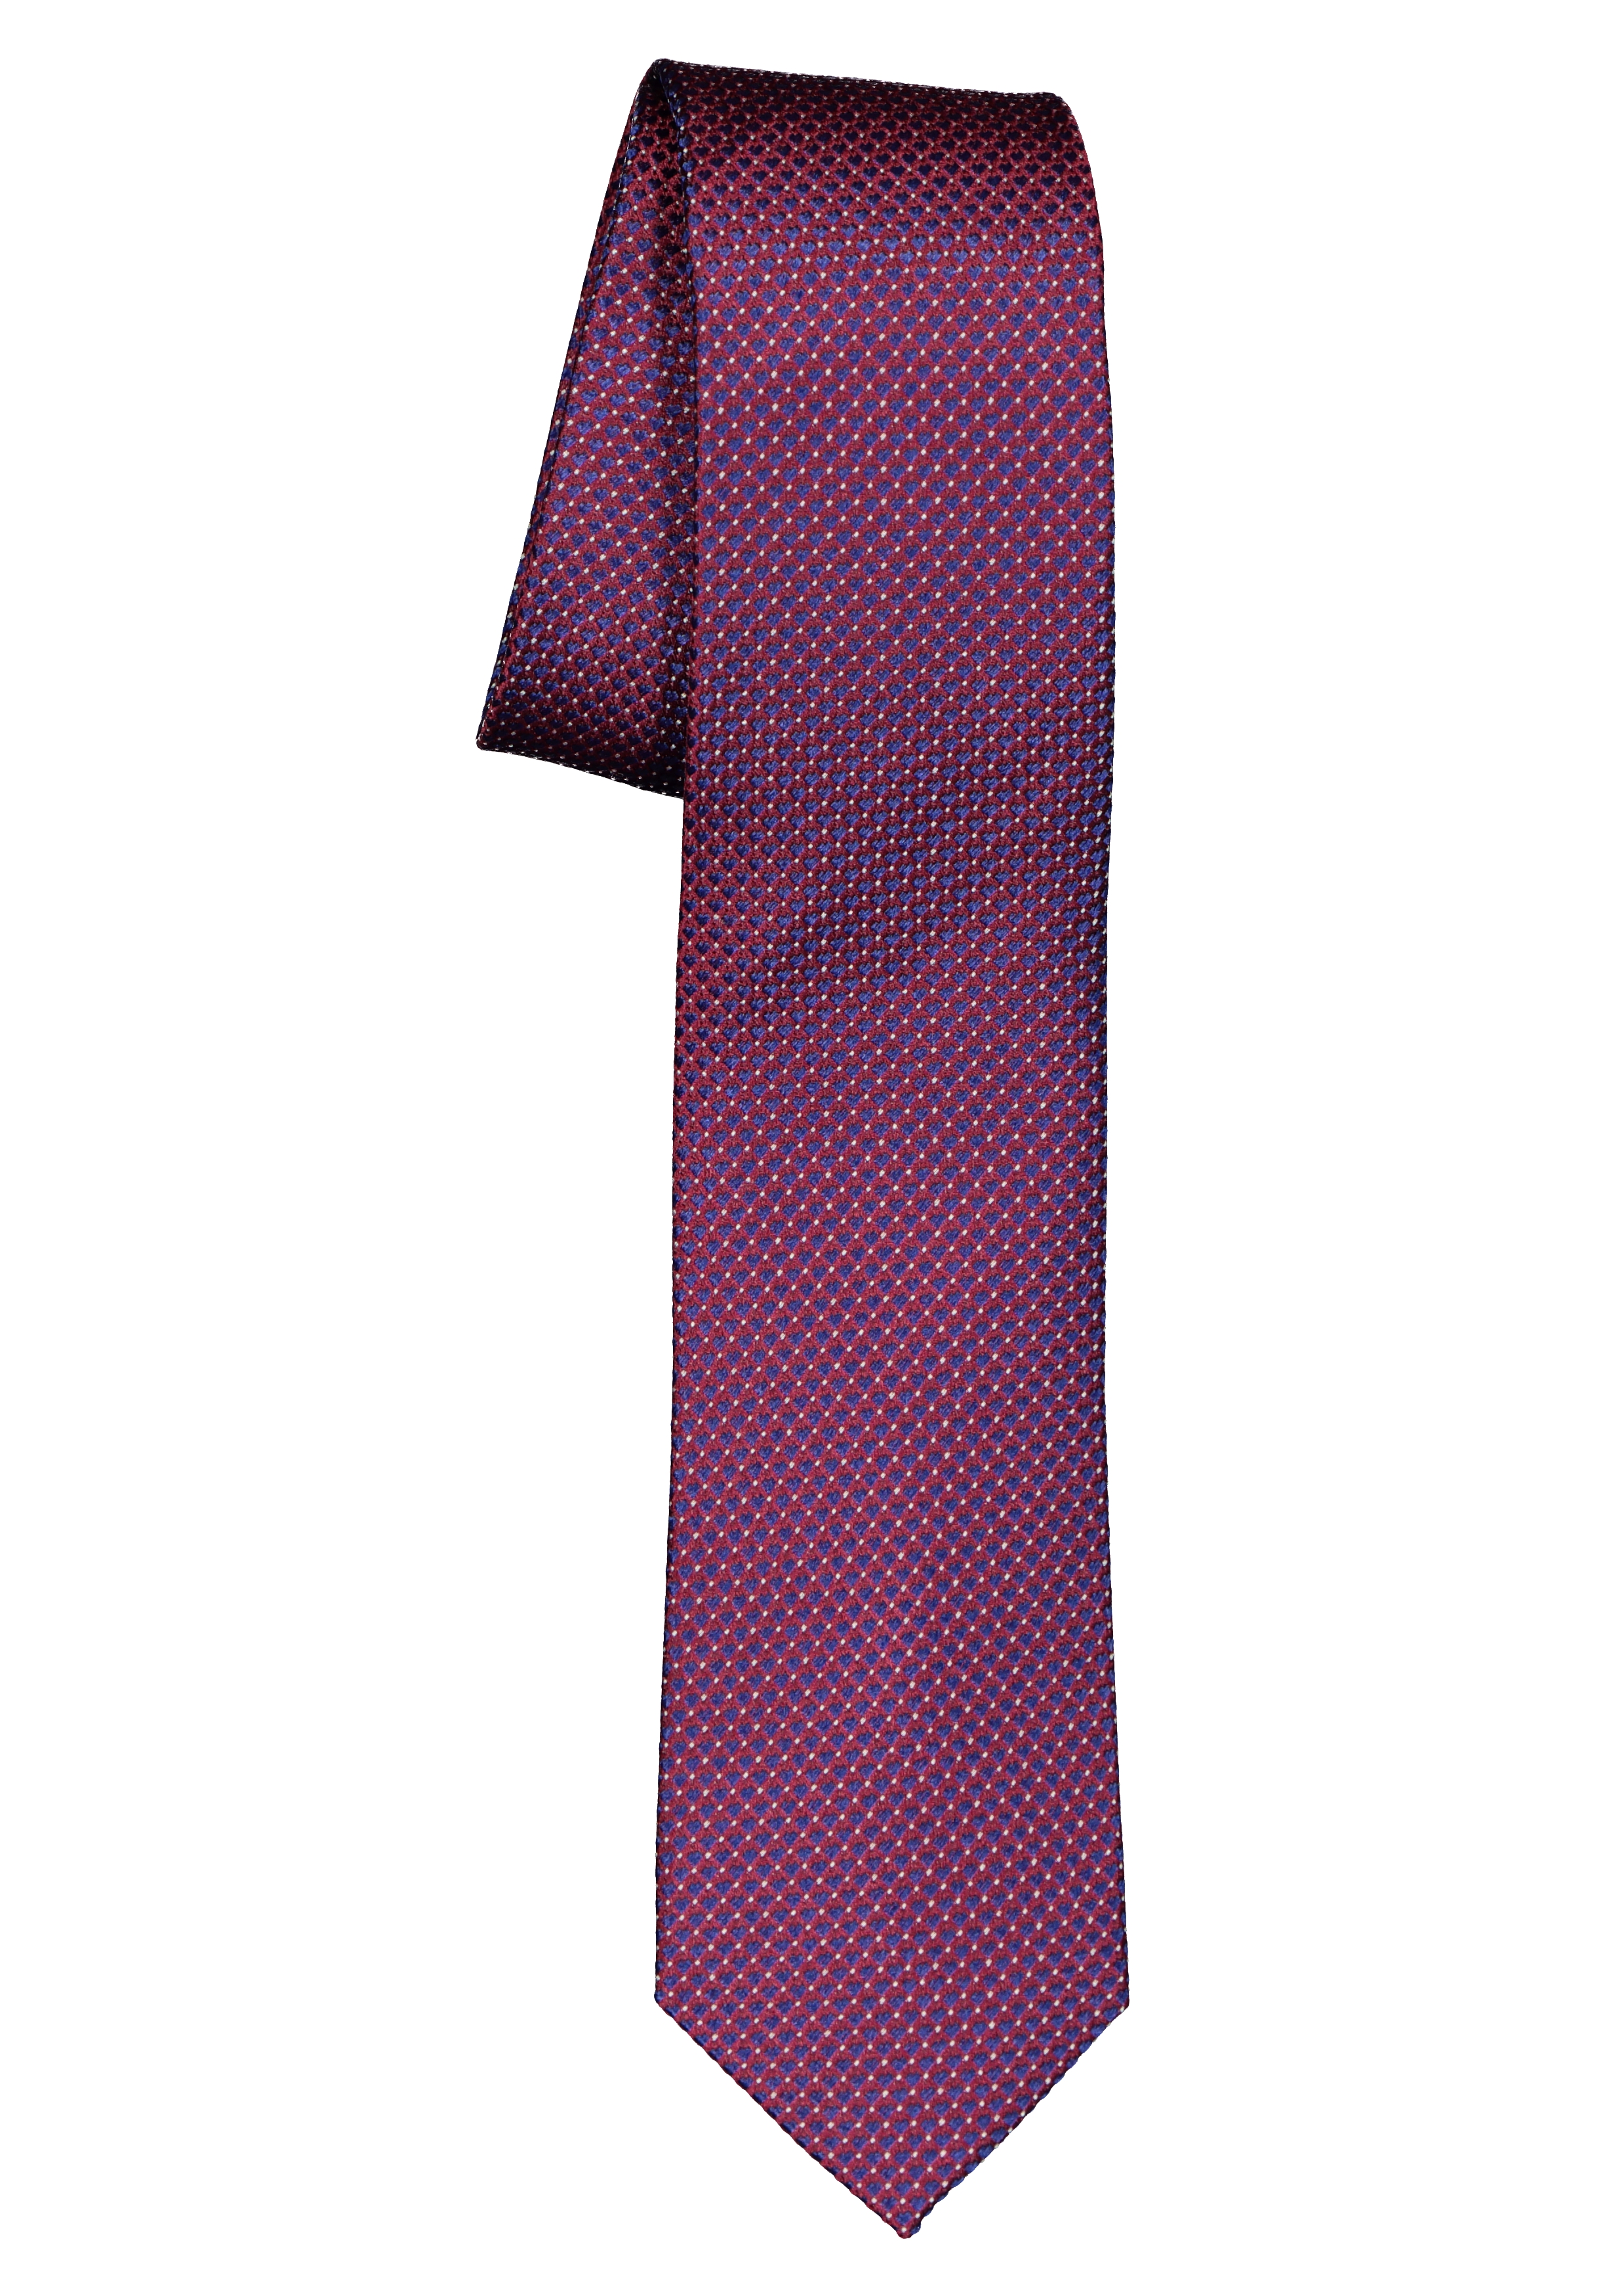 ETERNA smalle stropdas, bordeaux rood met blauw structuur